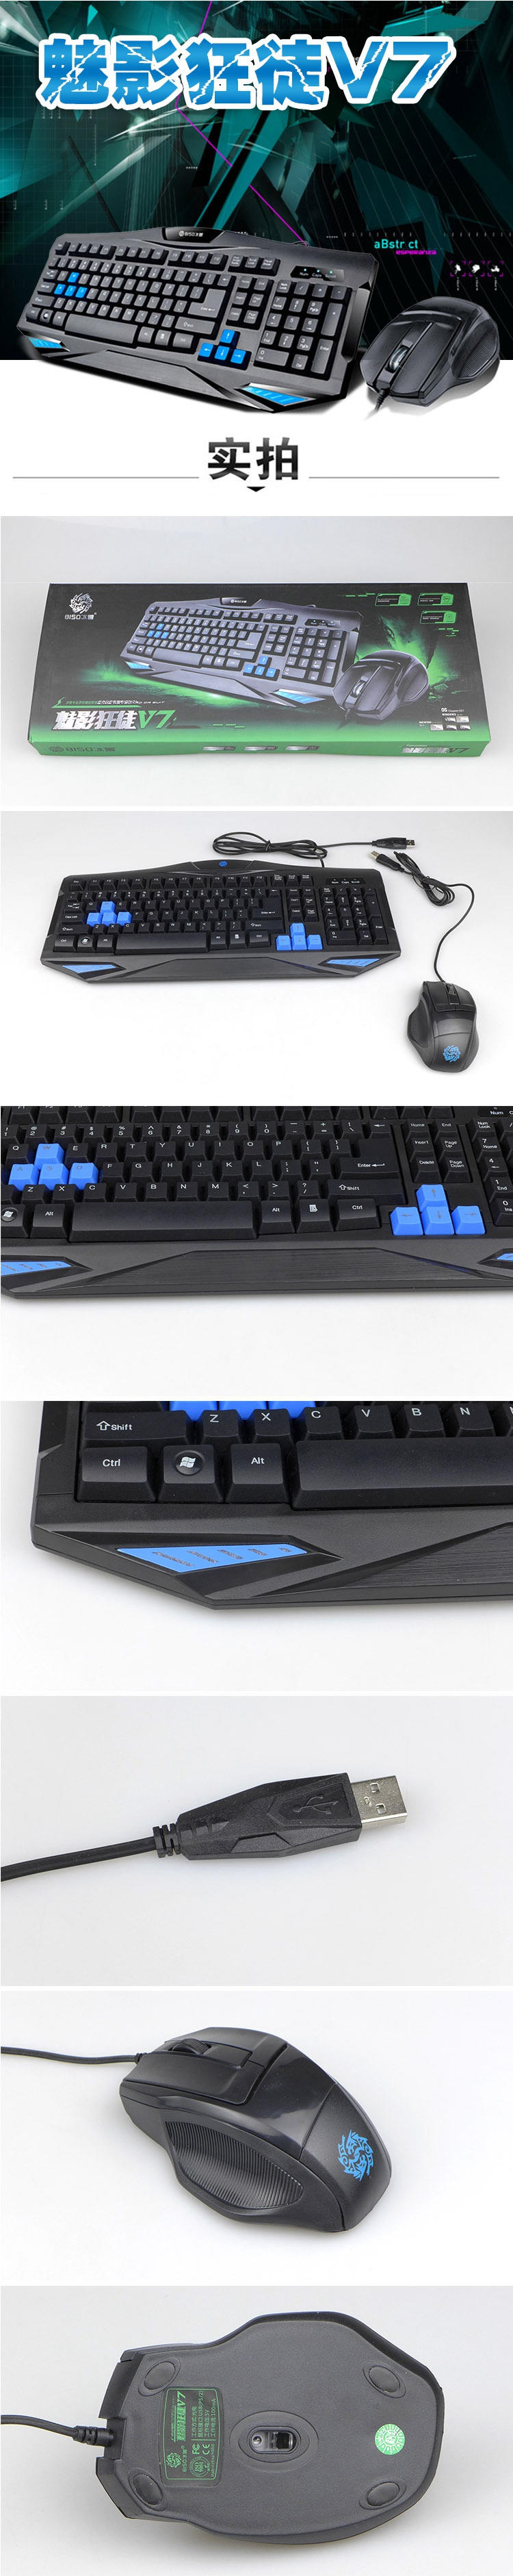 冰兽魅影狂徒专业级游戏键鼠套装V7 有线 鼠标+键盘套装 网吧办公游戏套件 键盘1000万次